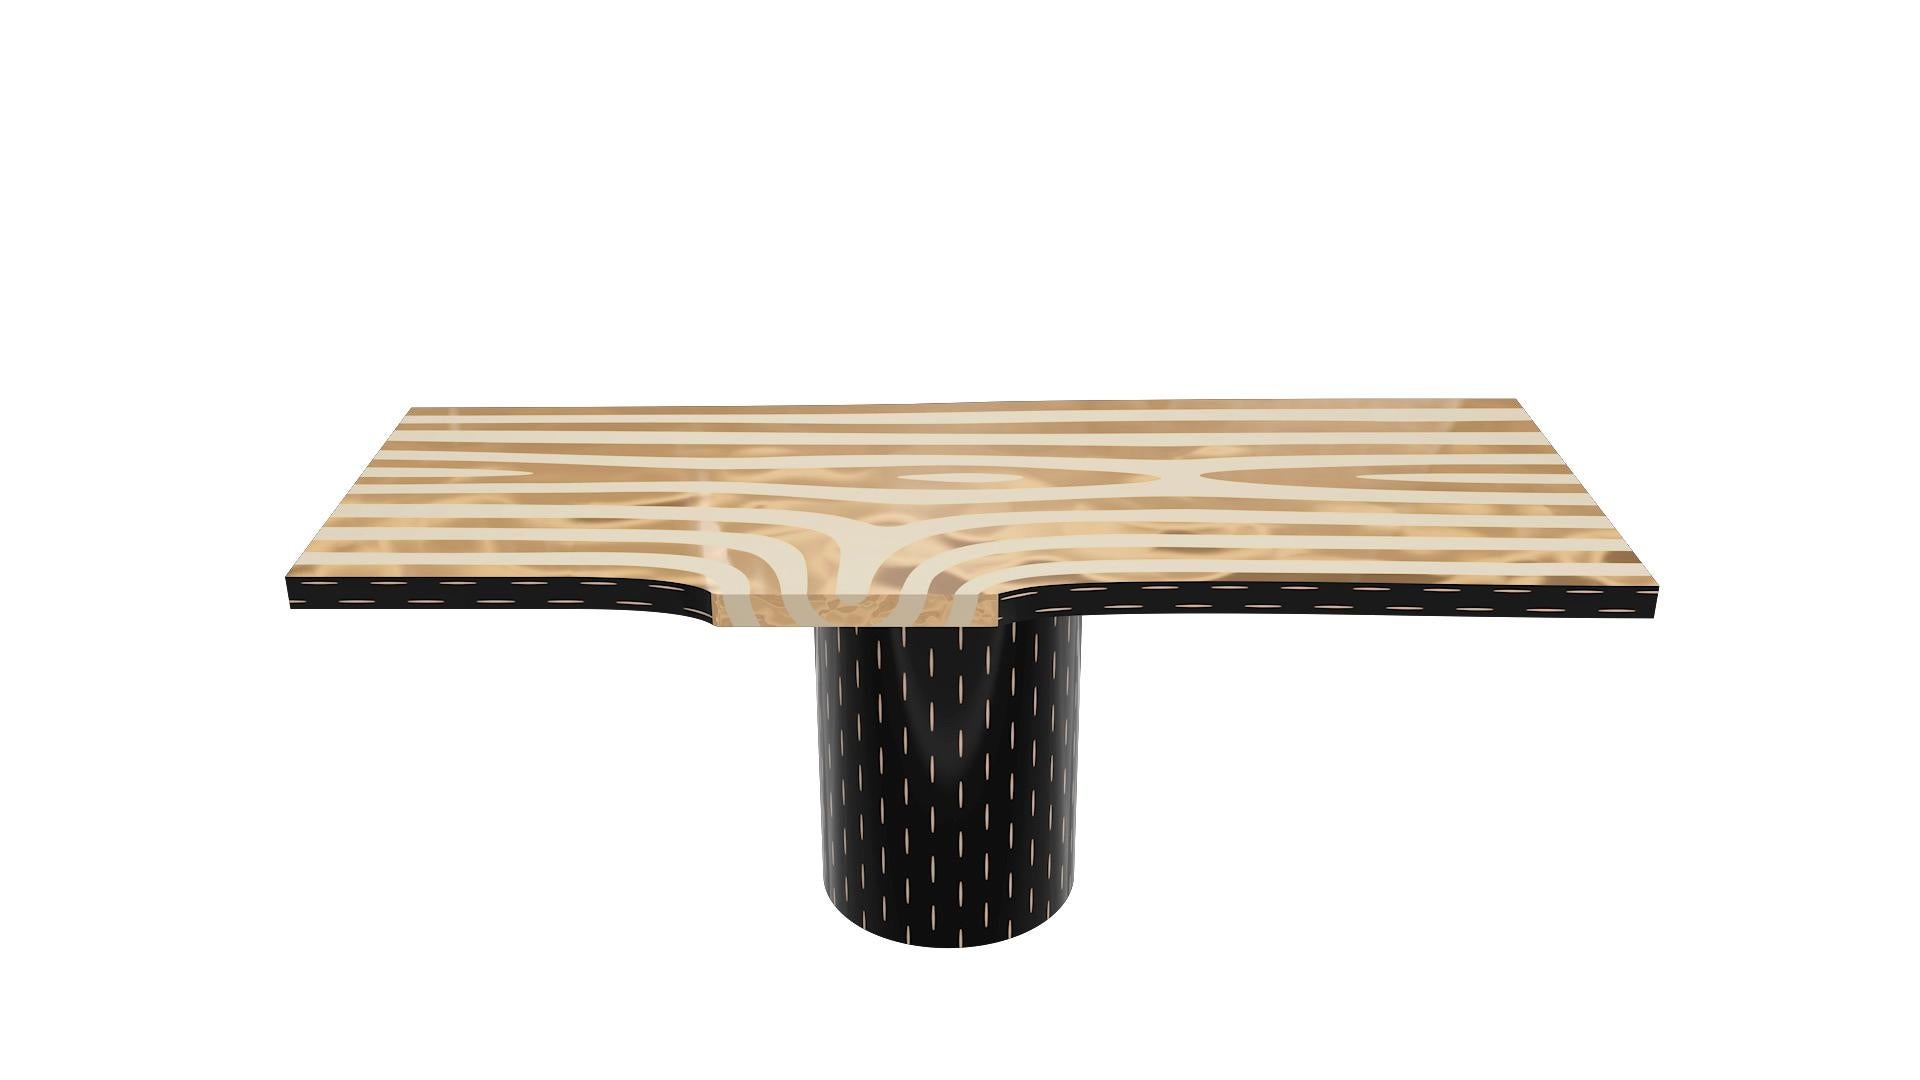 La marqueterie en laiton rappelle la beauté naturelle du bois sur le dessus de la table à manger Forest de Marcantonio, qui repose sur une jolie base artisanale avec des détails en laiton.

Pour ses premières créations, Marcantonio a présenté